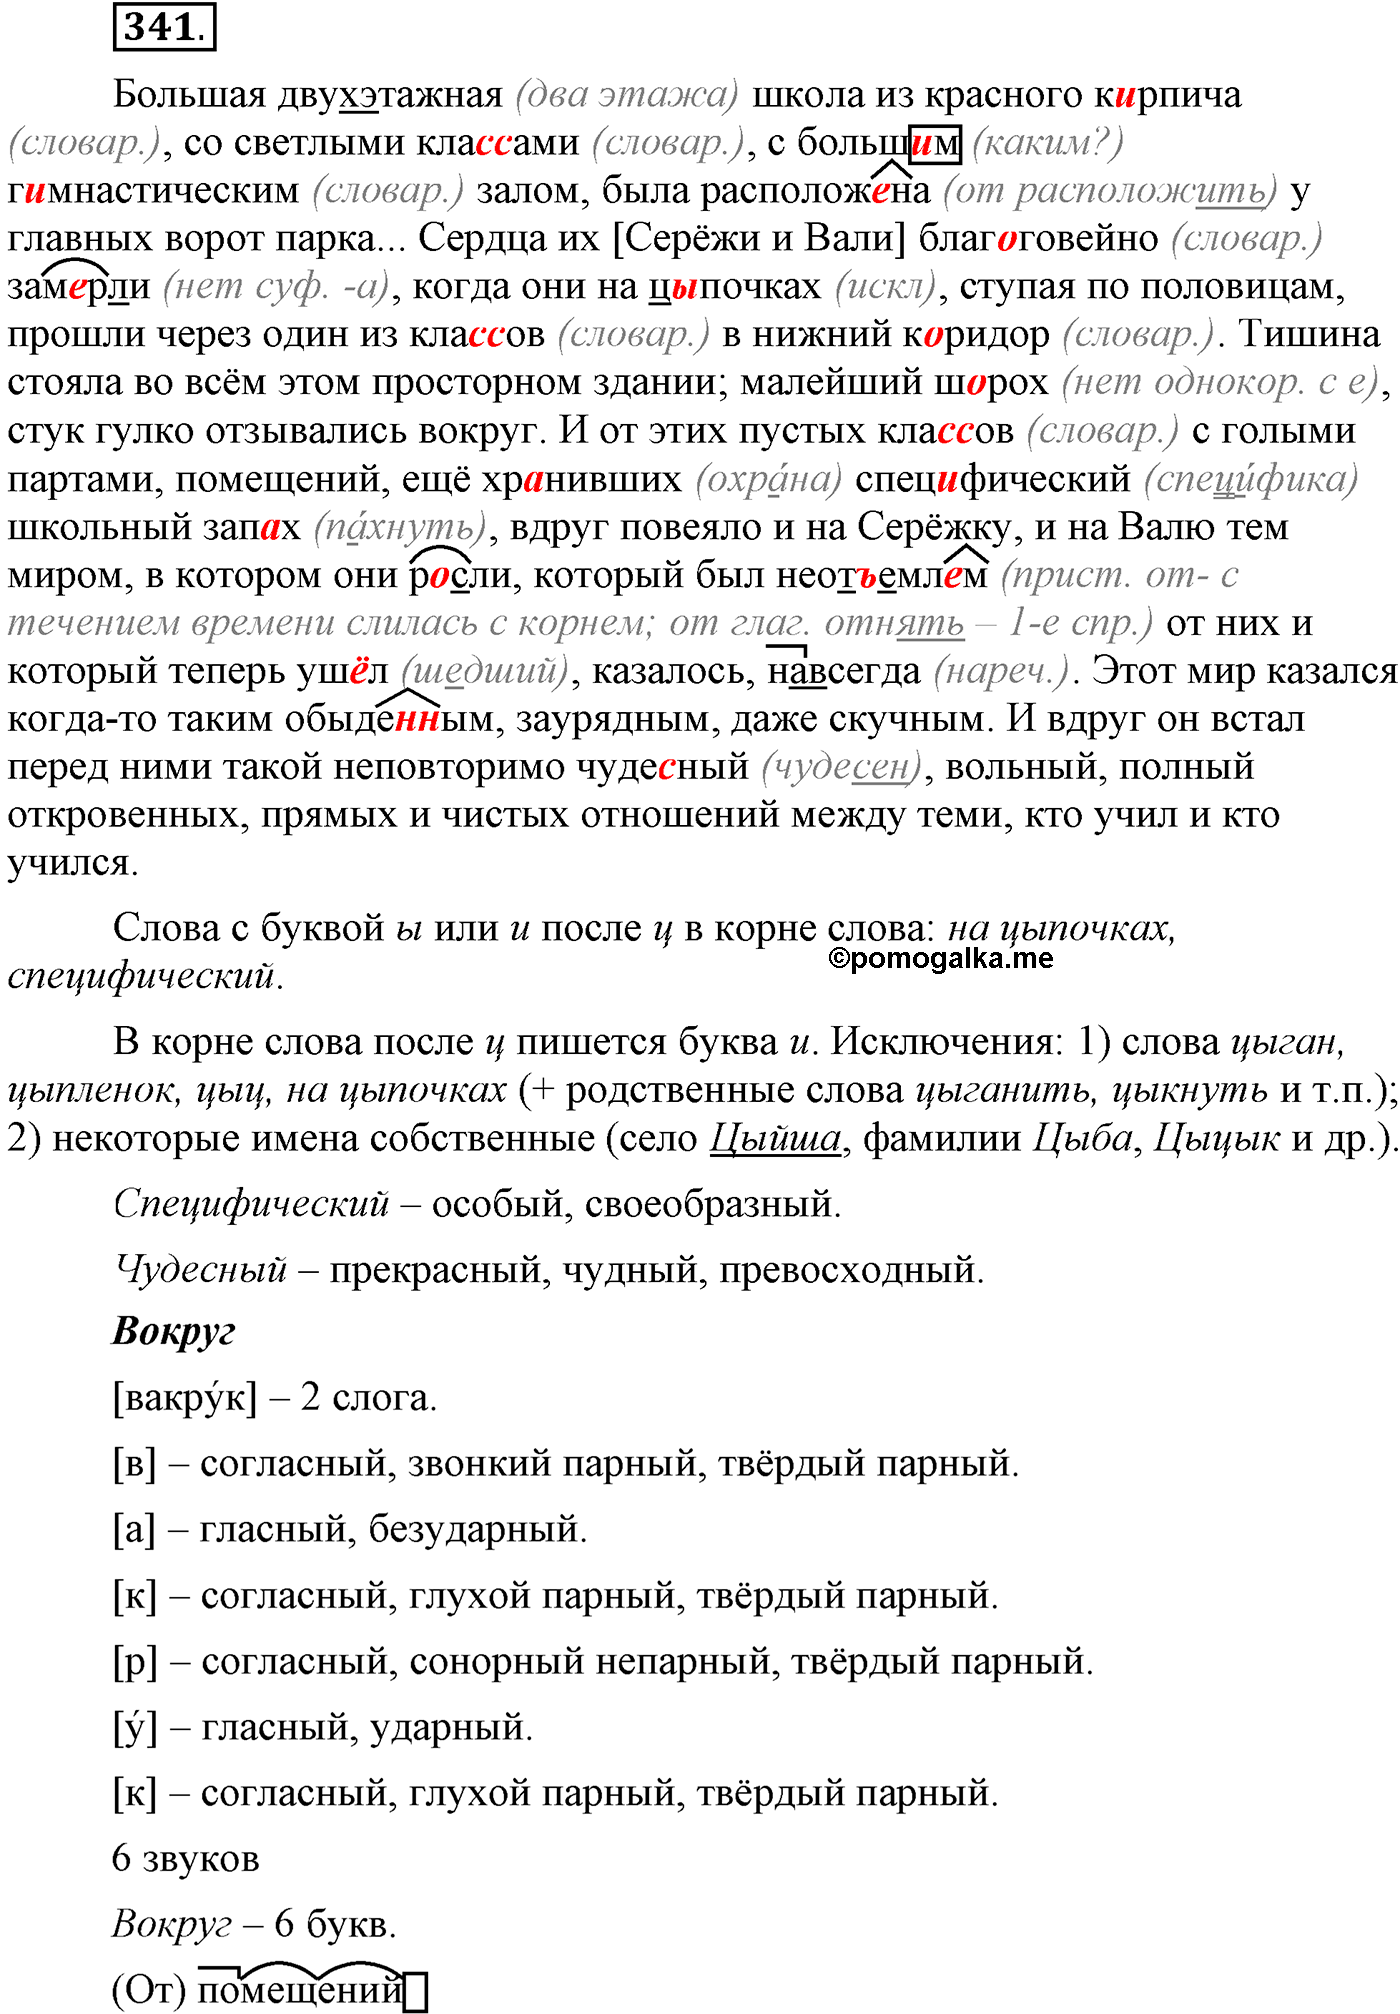 Русский язык 9 класс упражнение 341